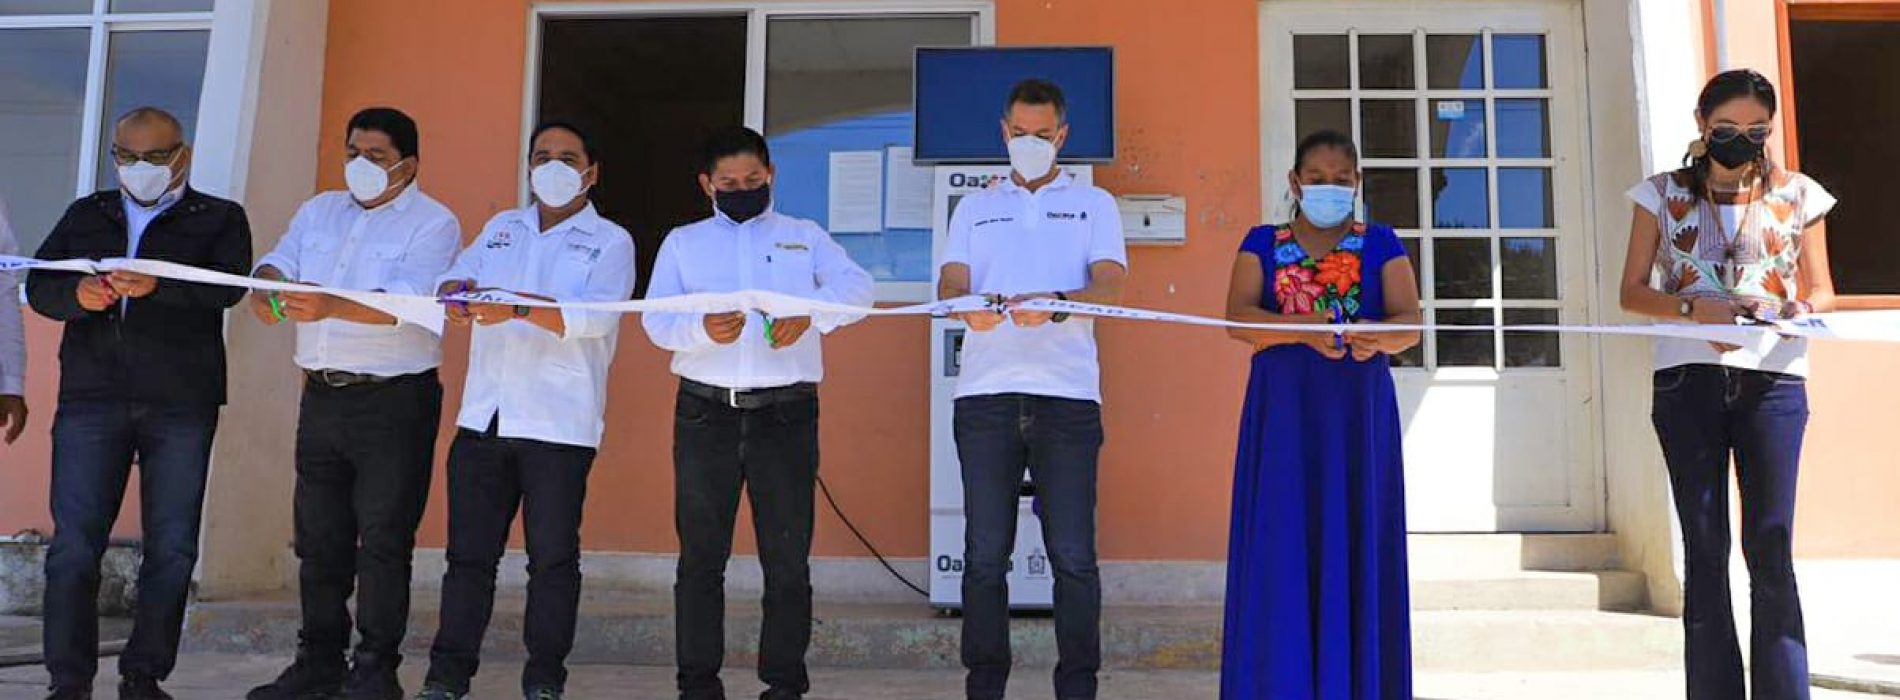 Santa María y San Miguel Chimalapa reciben apoyos en Salud y asistencia social